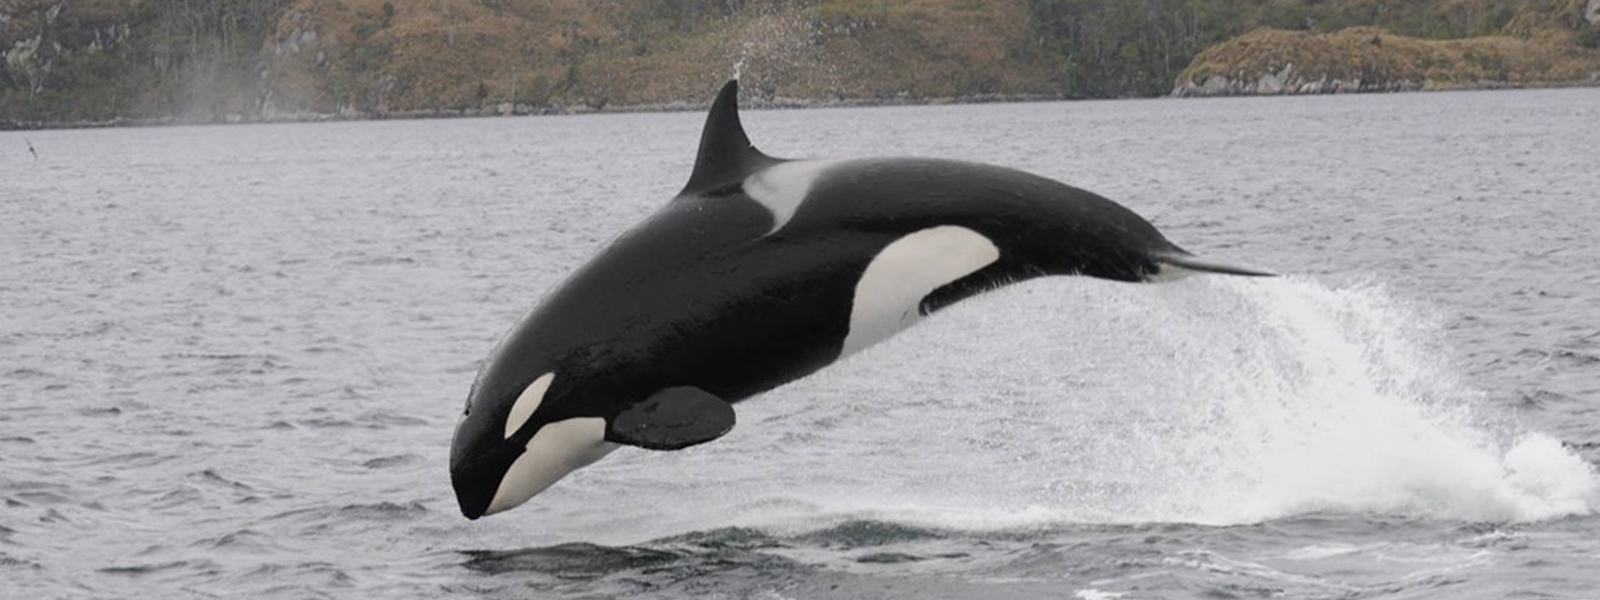 observation de la faune, détroit de Magellan, Patagonie chilienne. orque